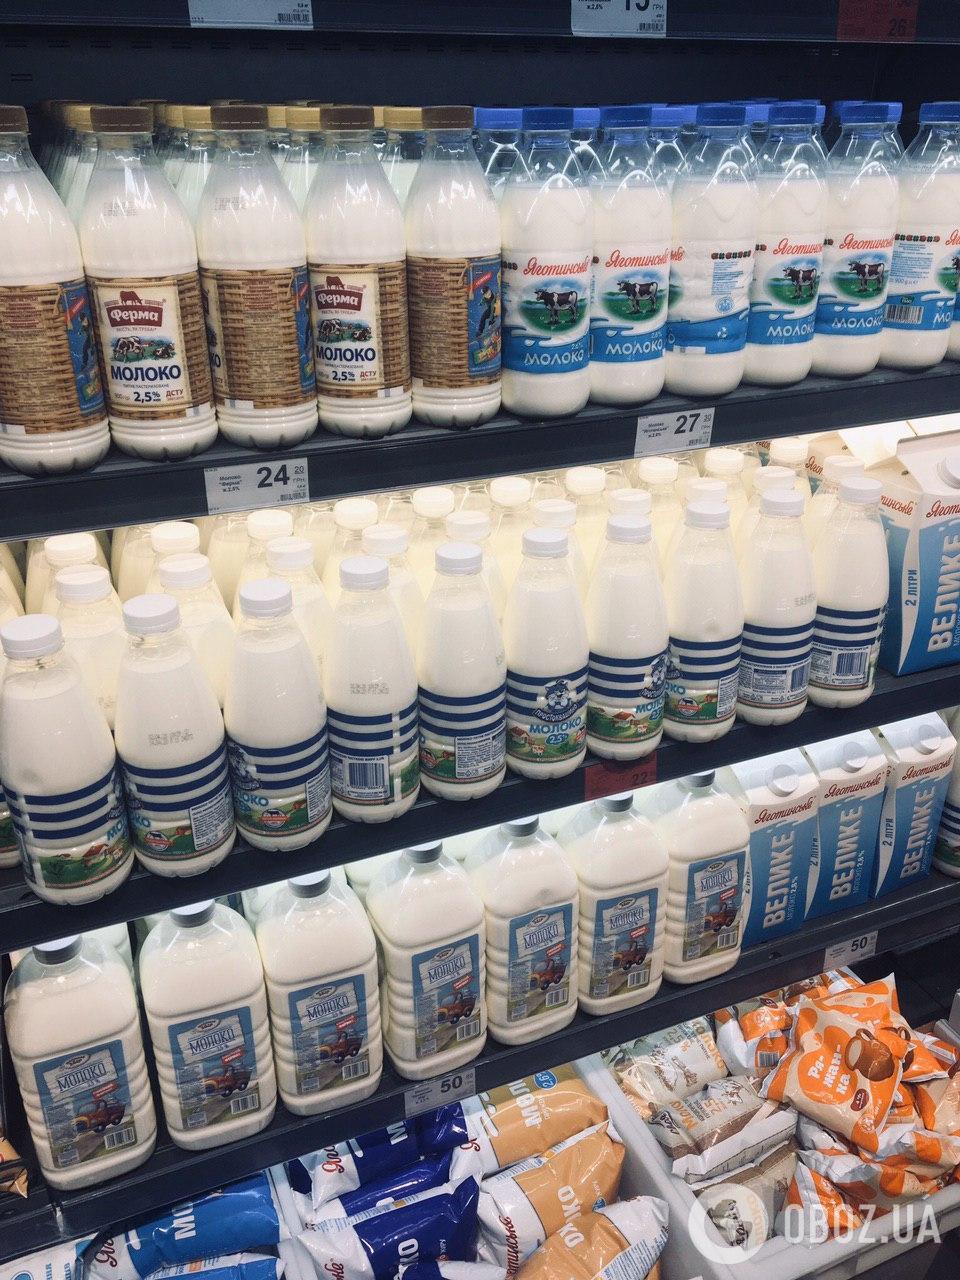 Повышение цен коснулось и разнообразной молочной продукции